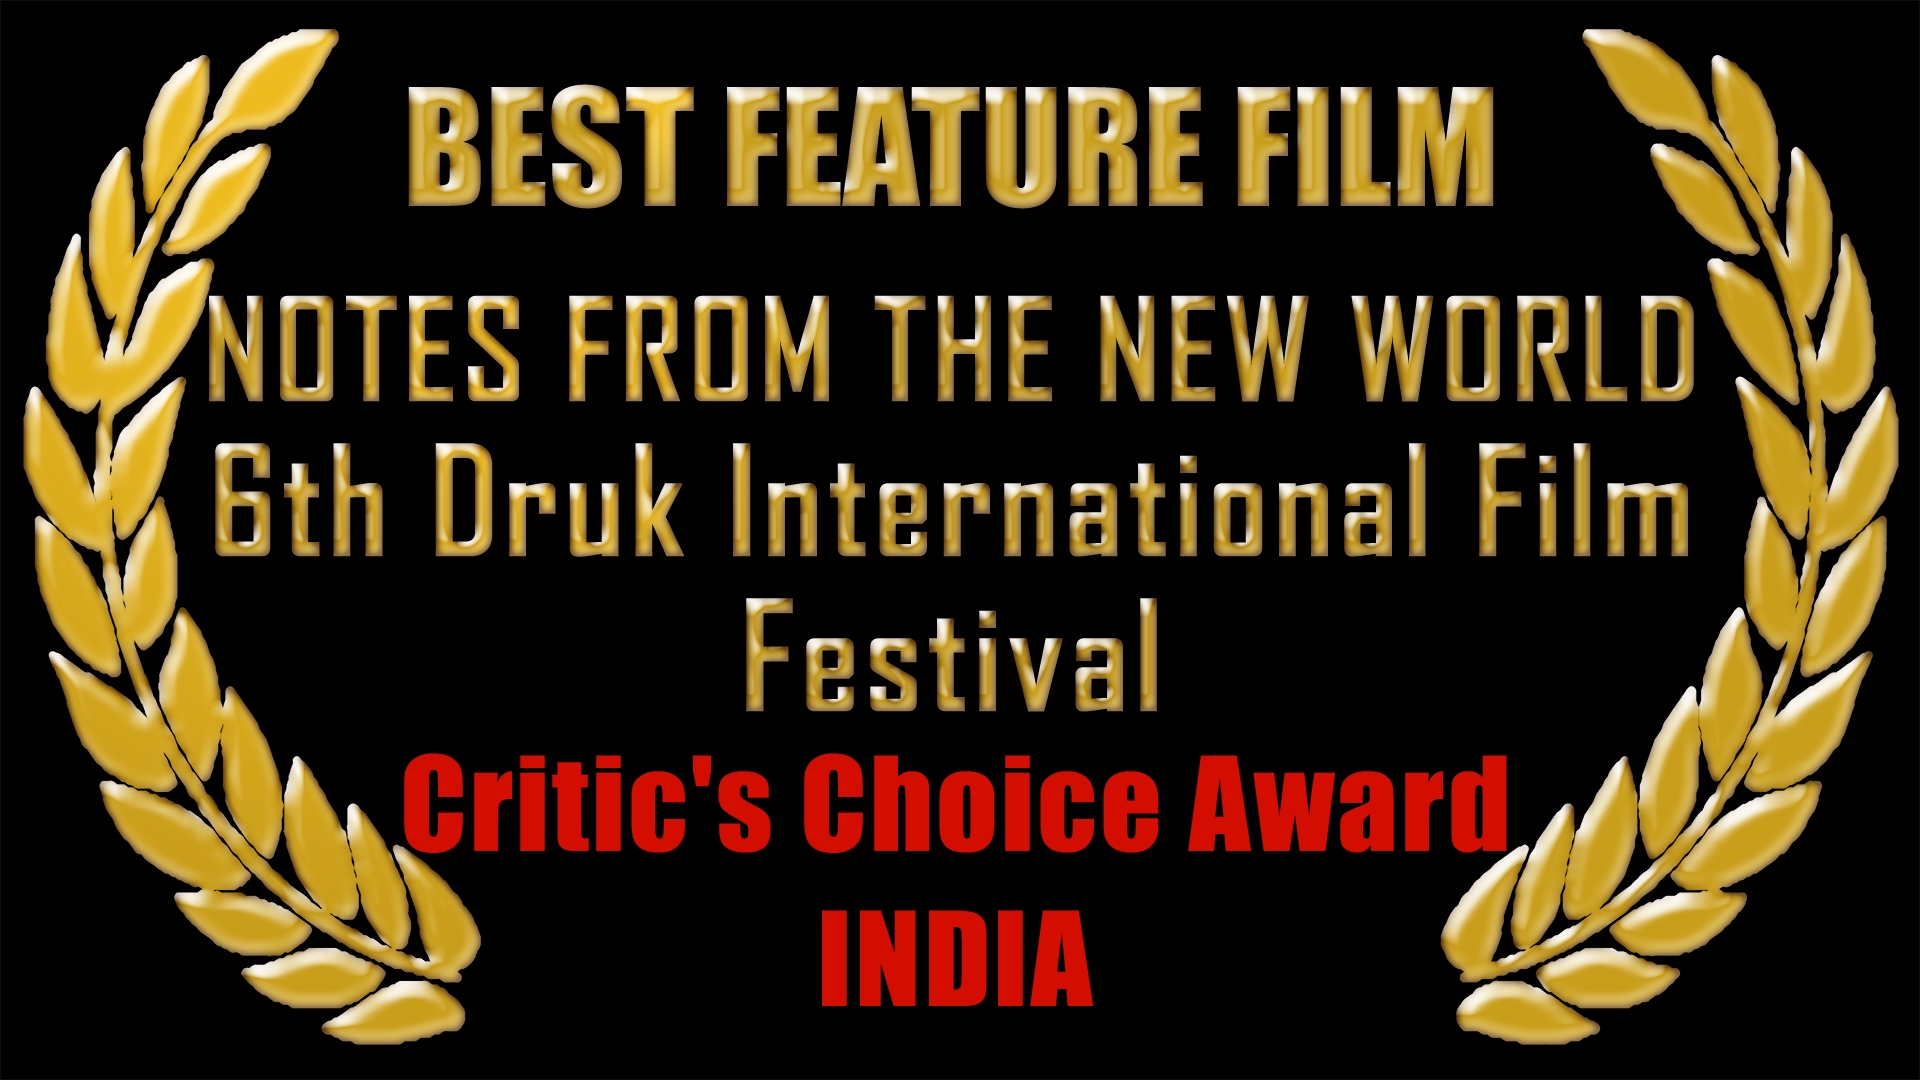 Best Feature Film, India